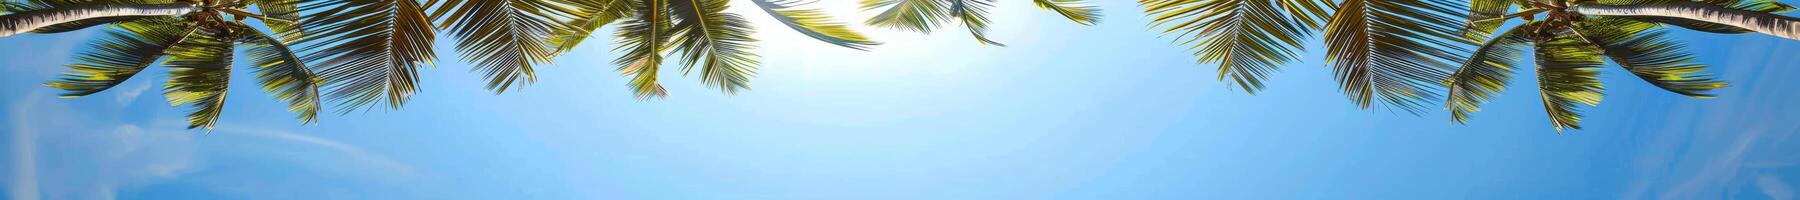 tropical palma arboles enmarcado azul cielo en verano foto